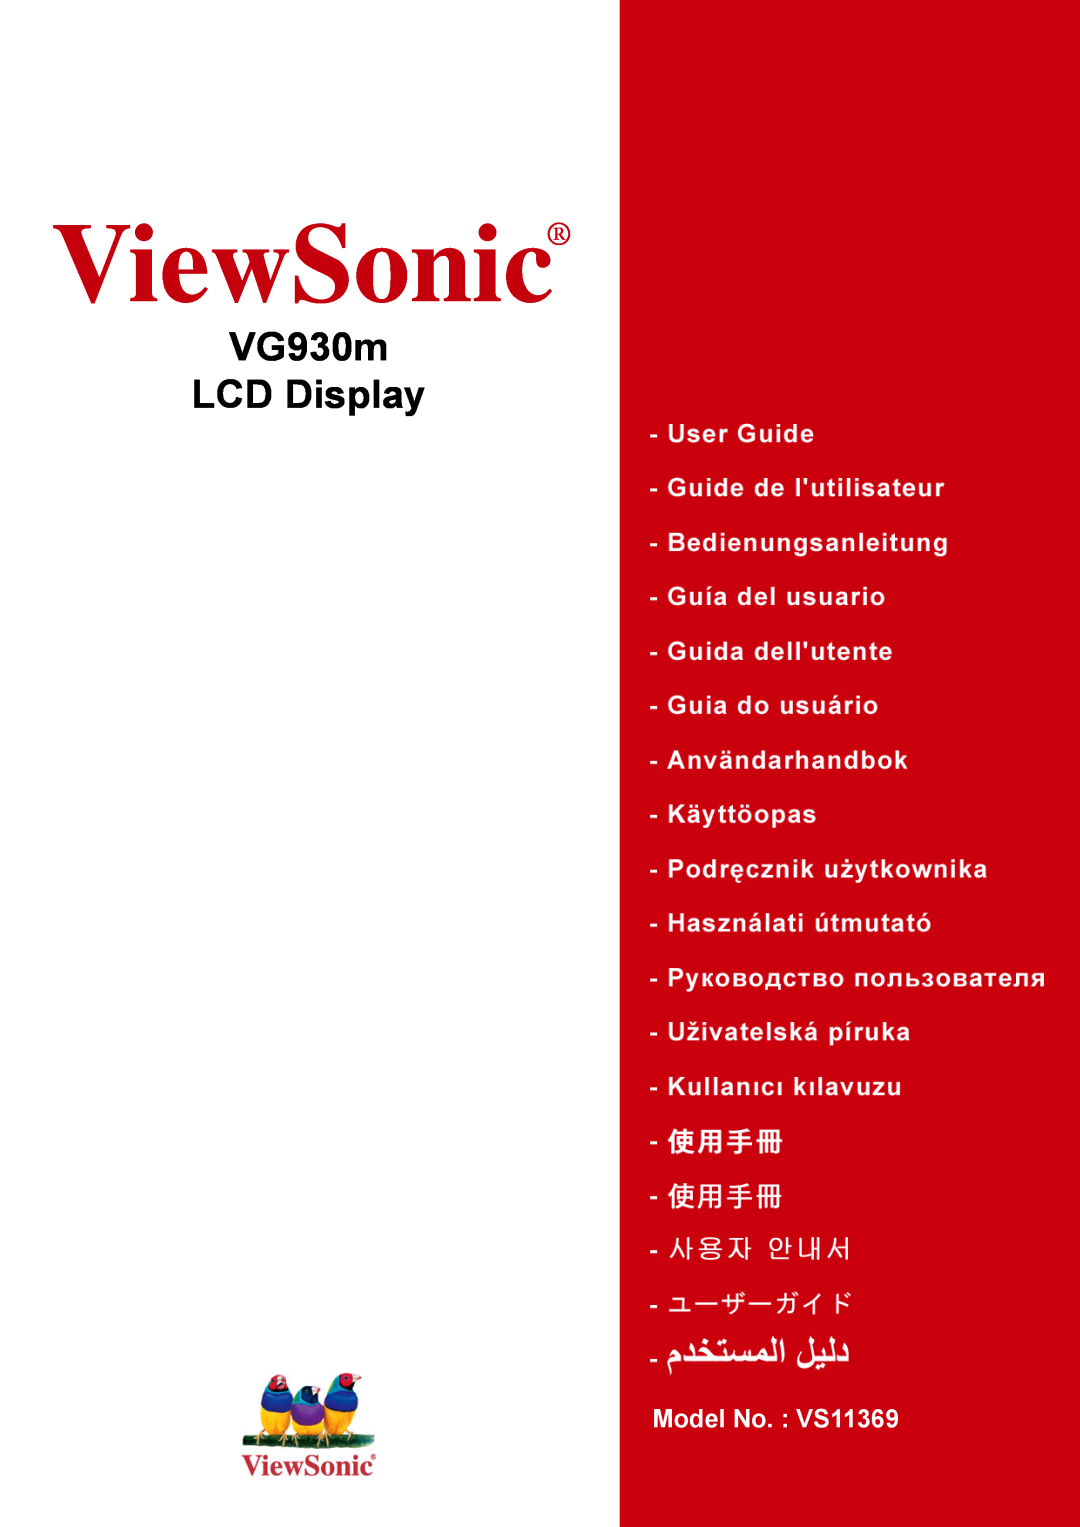 ViewSonic manual ViewSonic, VG930m LCD Display, Model No. VS11369 